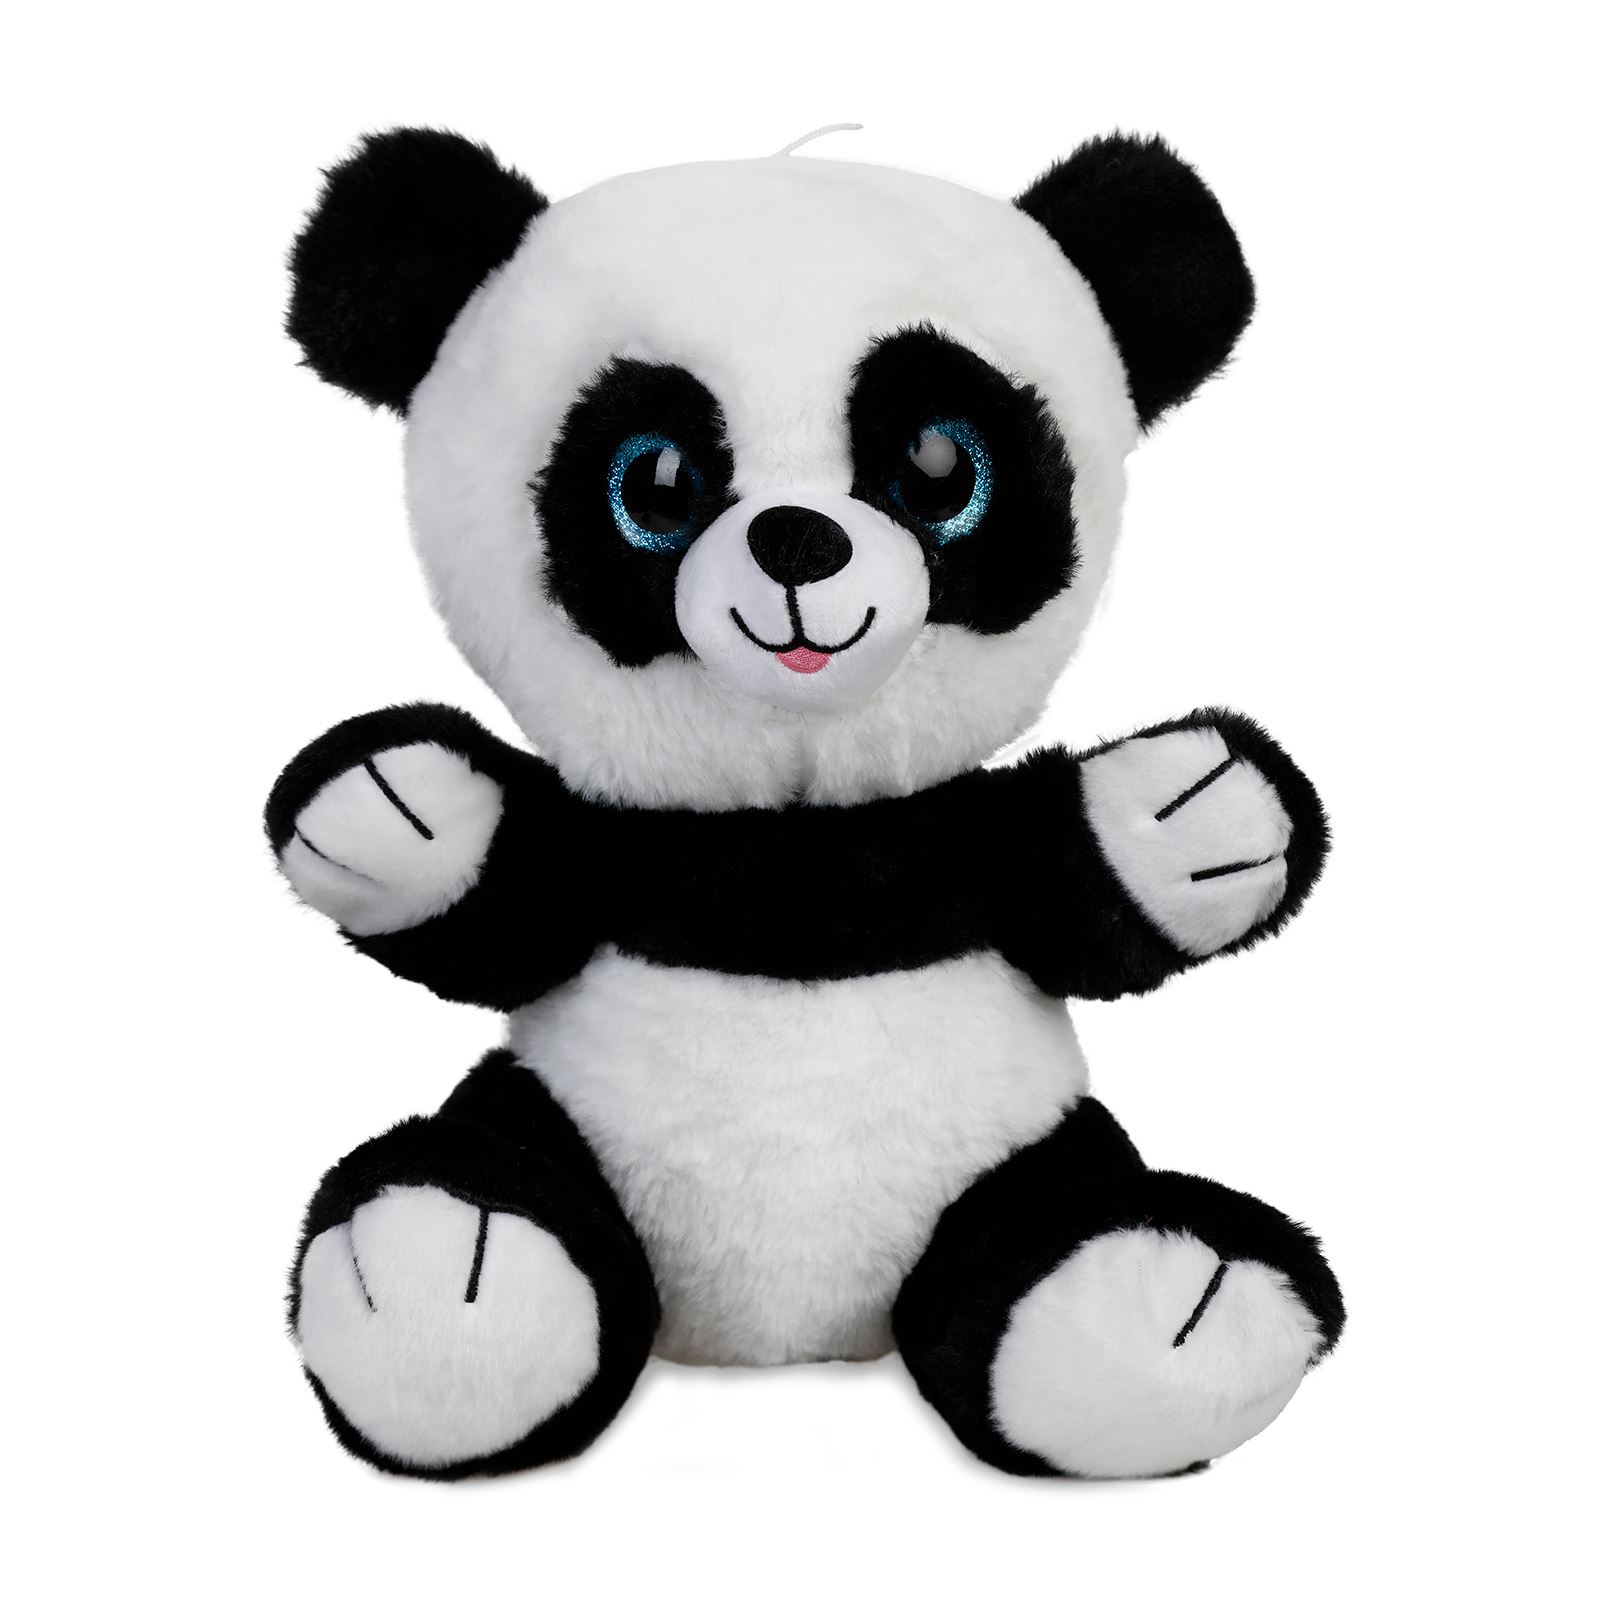 Halley Oyuncak Peluş Panda 30 cm Siyah-Beyaz